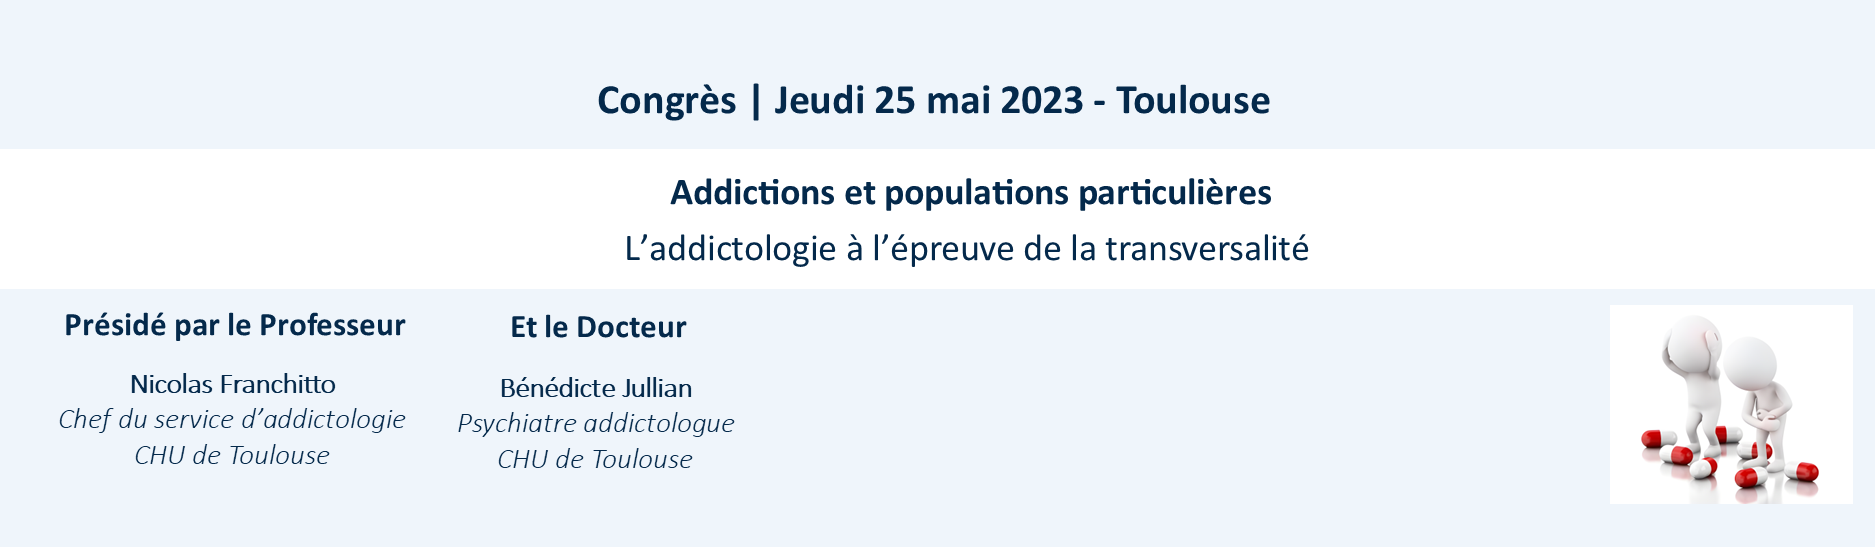 Congrès_2023_addictologie_toulouse